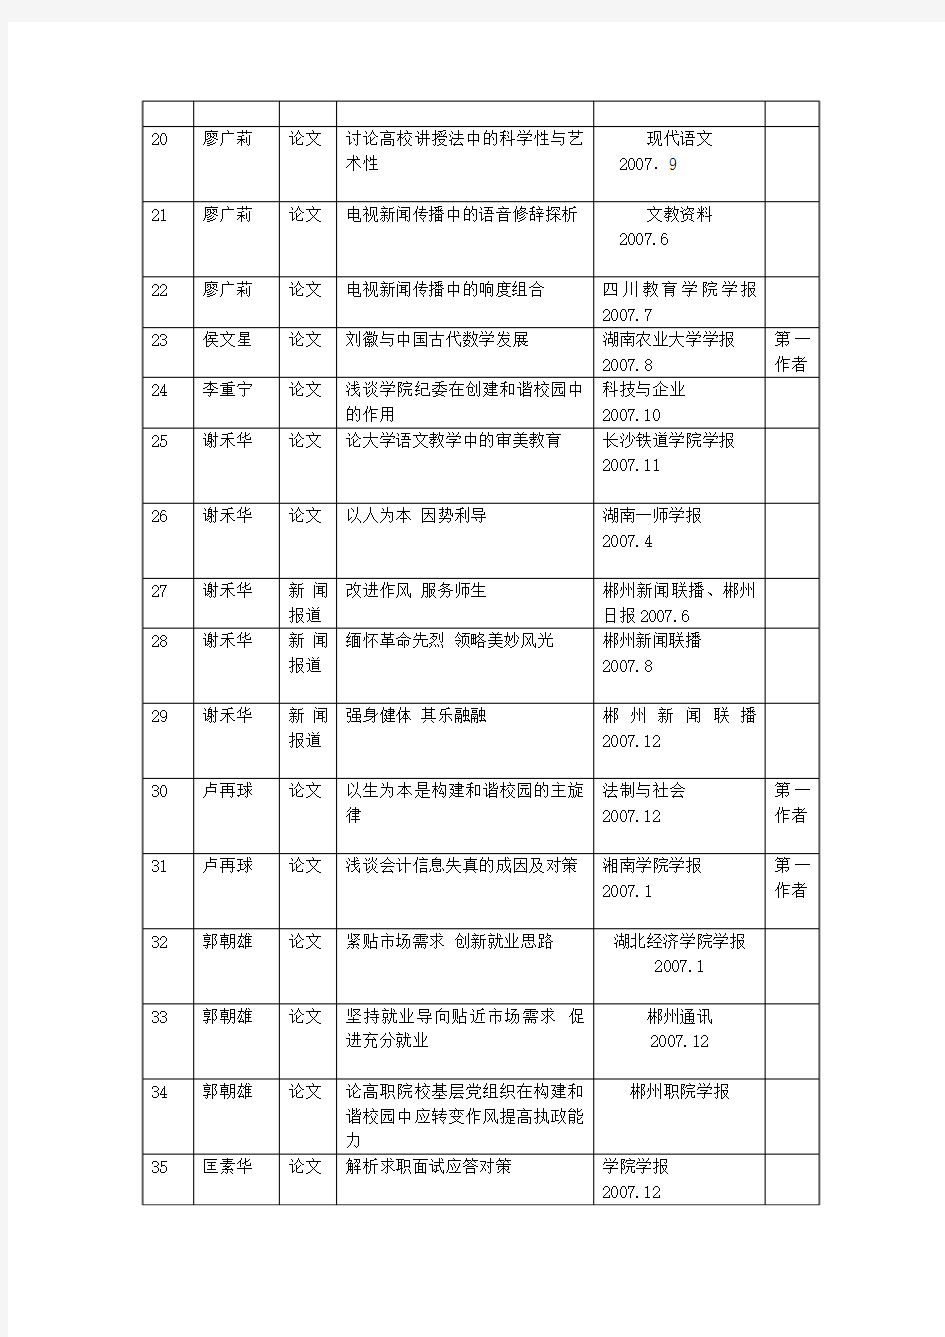 郴州职业技术学院2007年度教师科研成果统计表